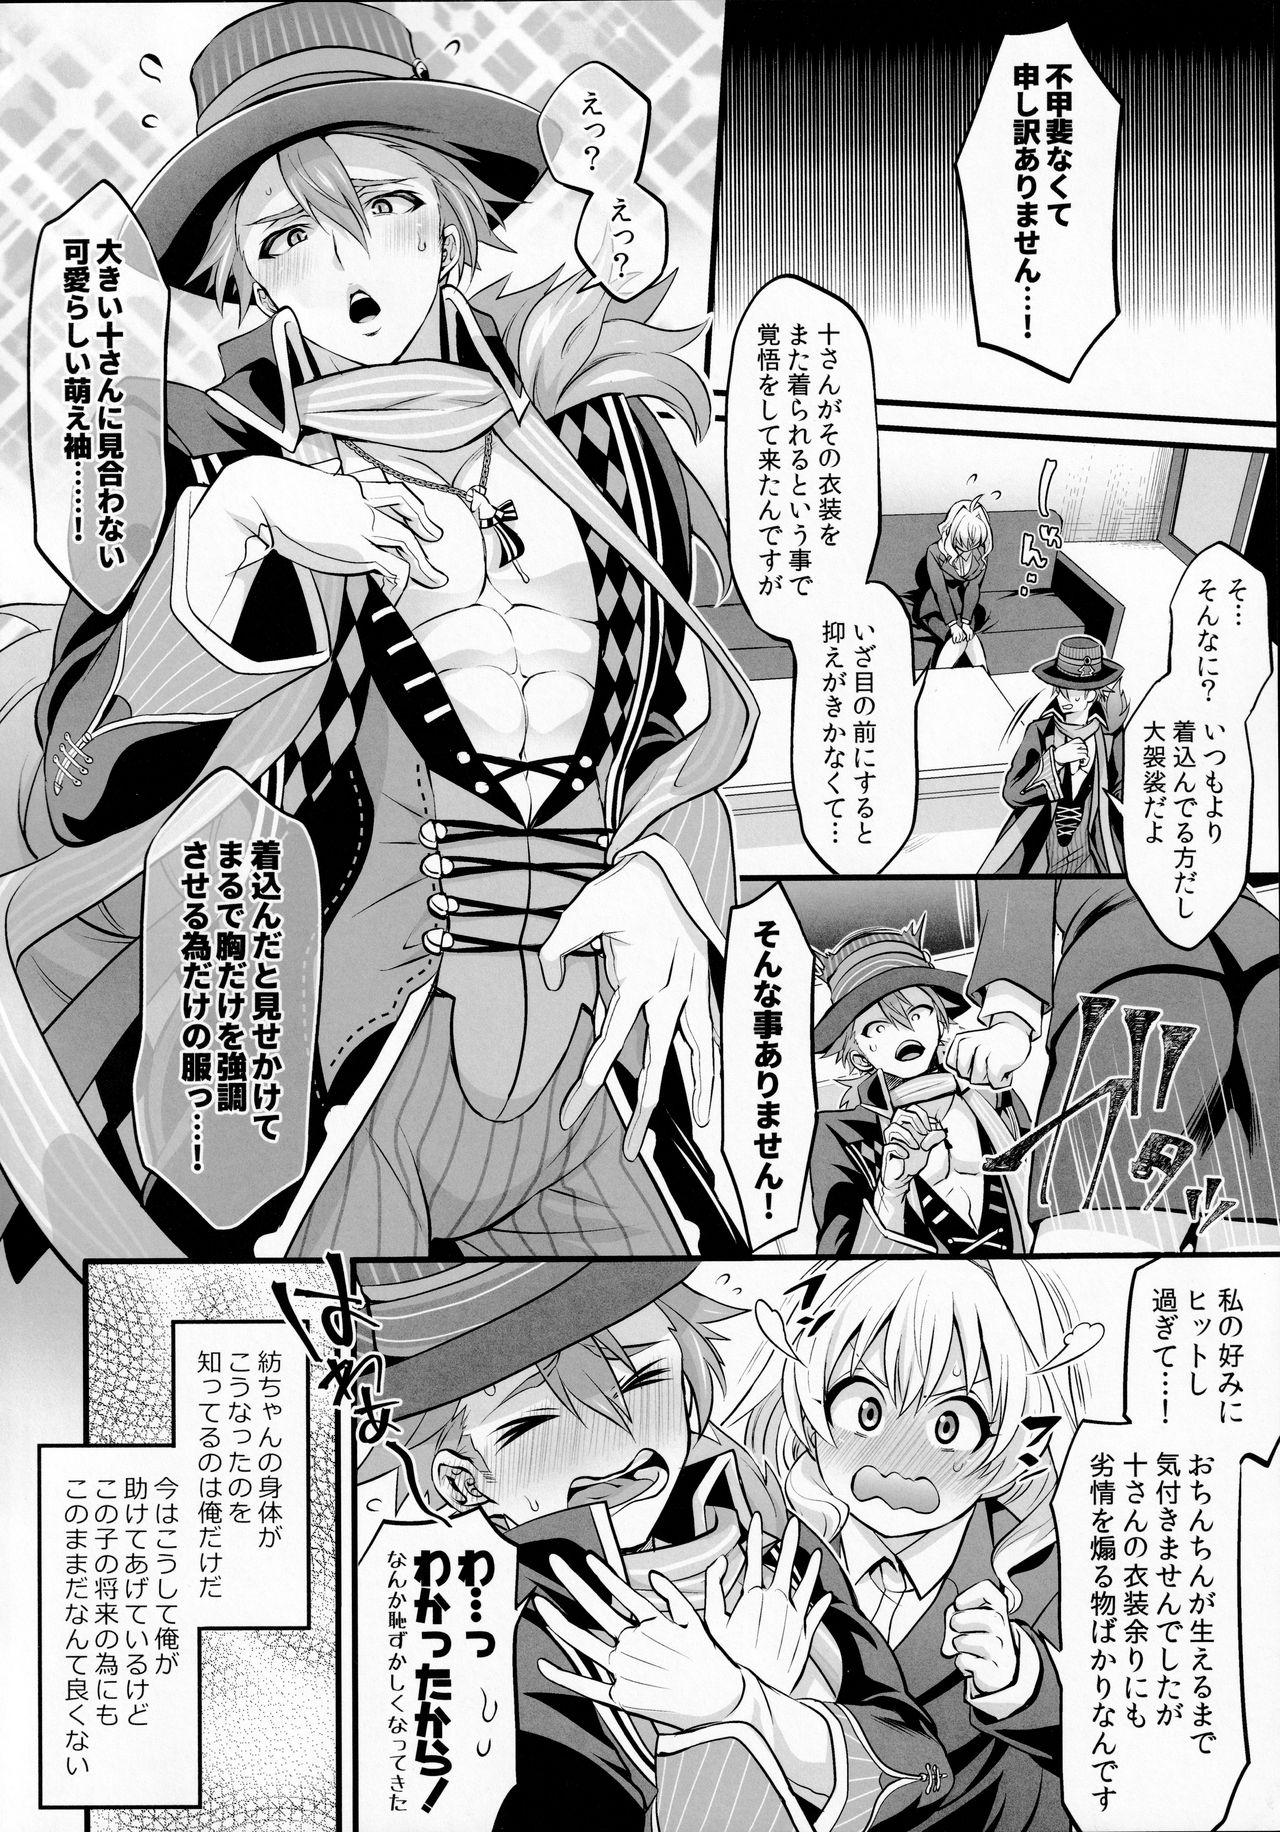 Realamateur Watashi no Ochinchin ga Amaeta Gatterun desu! - Idolish7 Culo Grande - Page 4